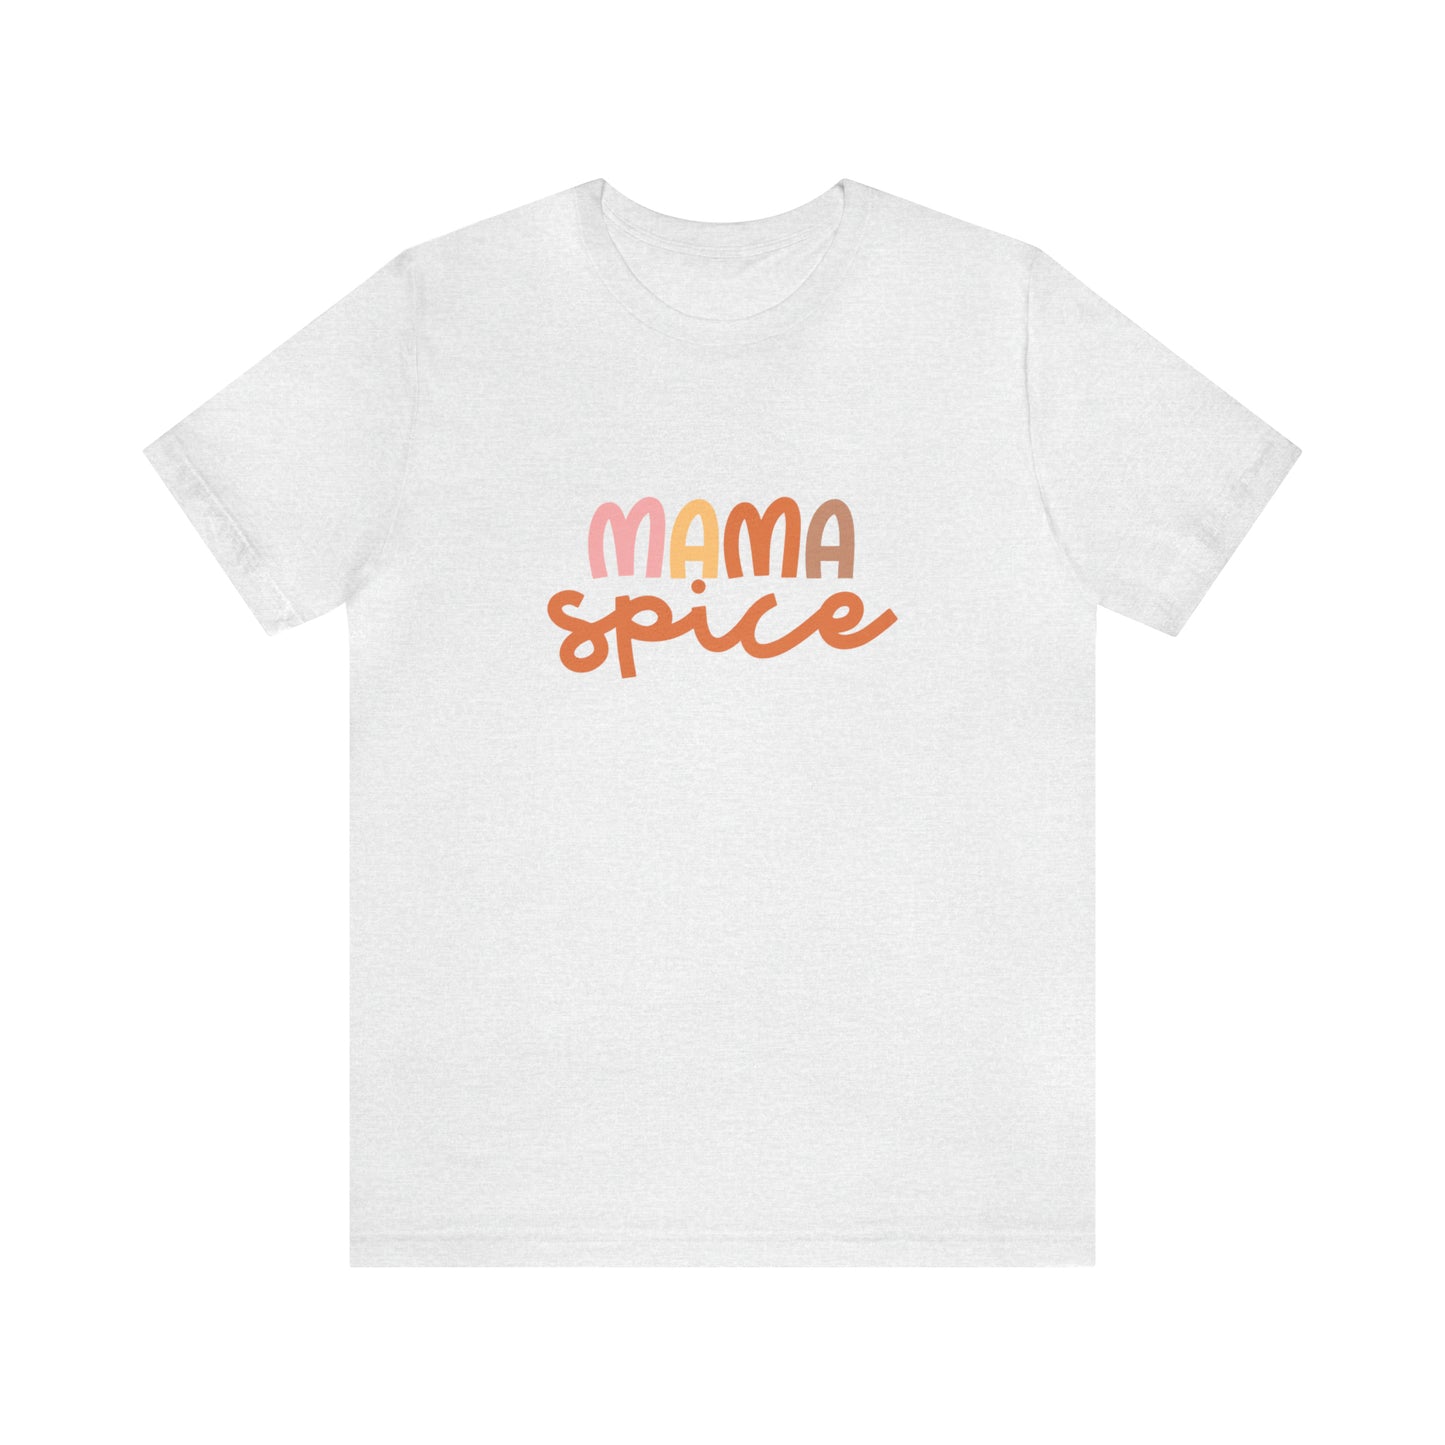 Style 3 Mama Spice Shirt, Fall T-Shirt